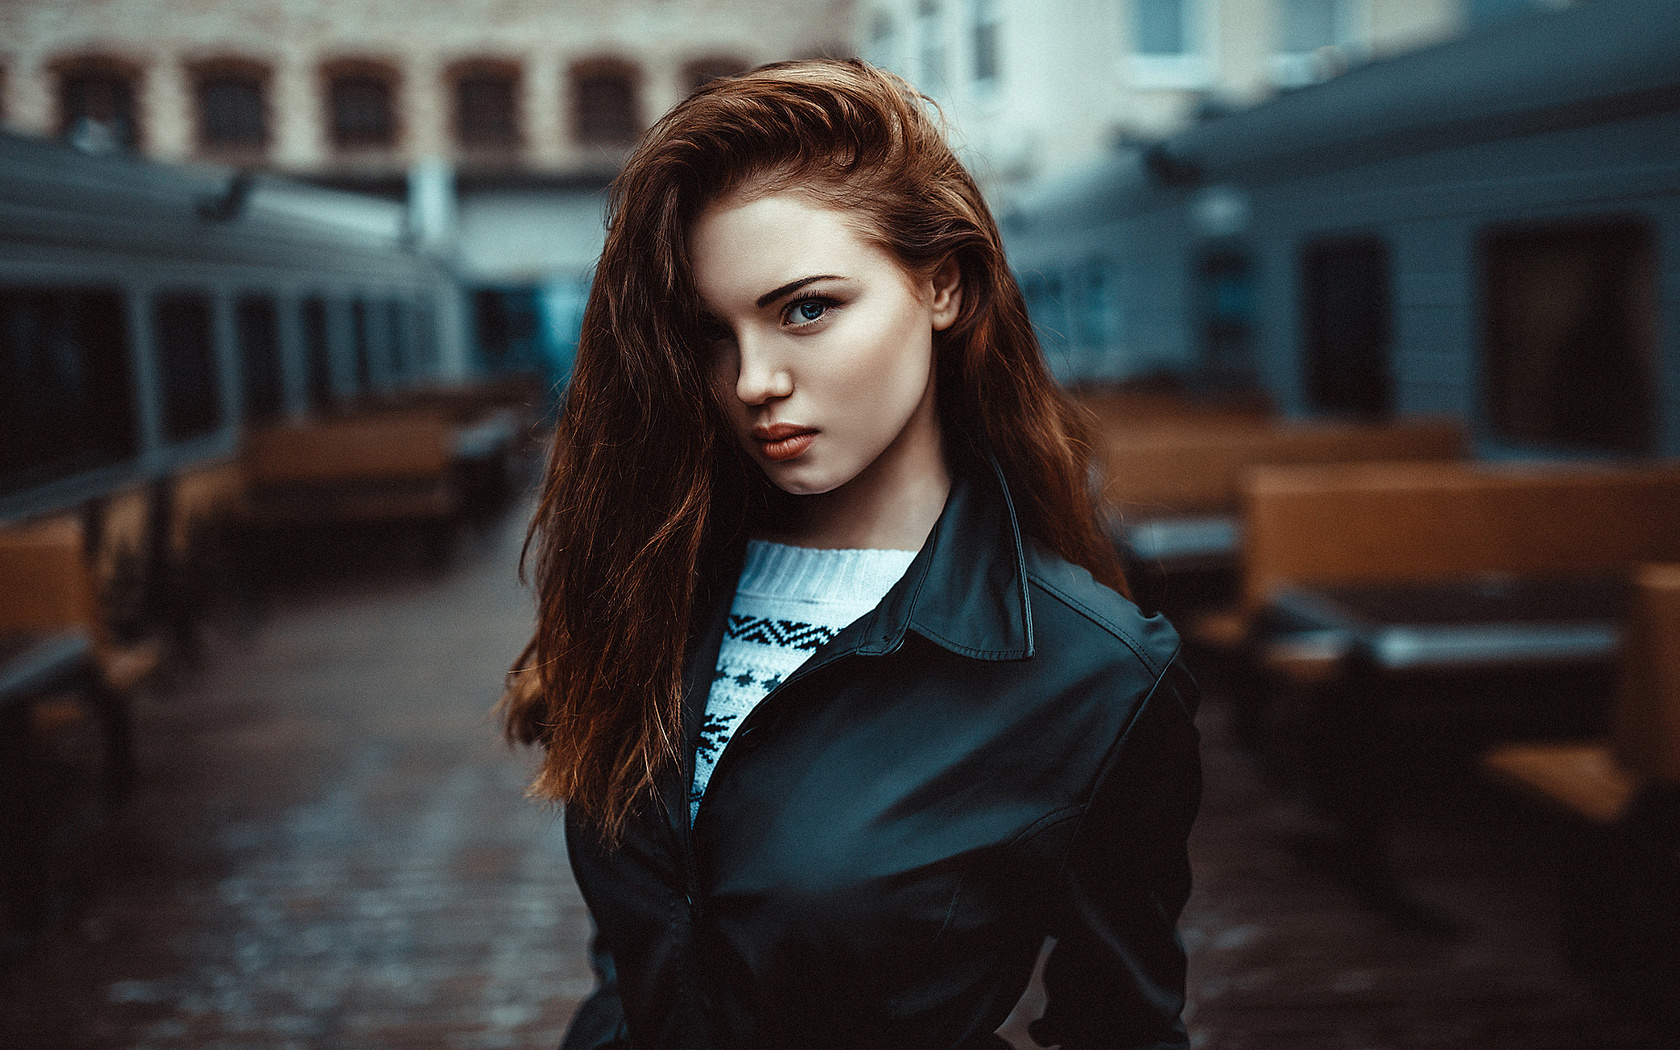 women, portrait, depth of field, leather jackets